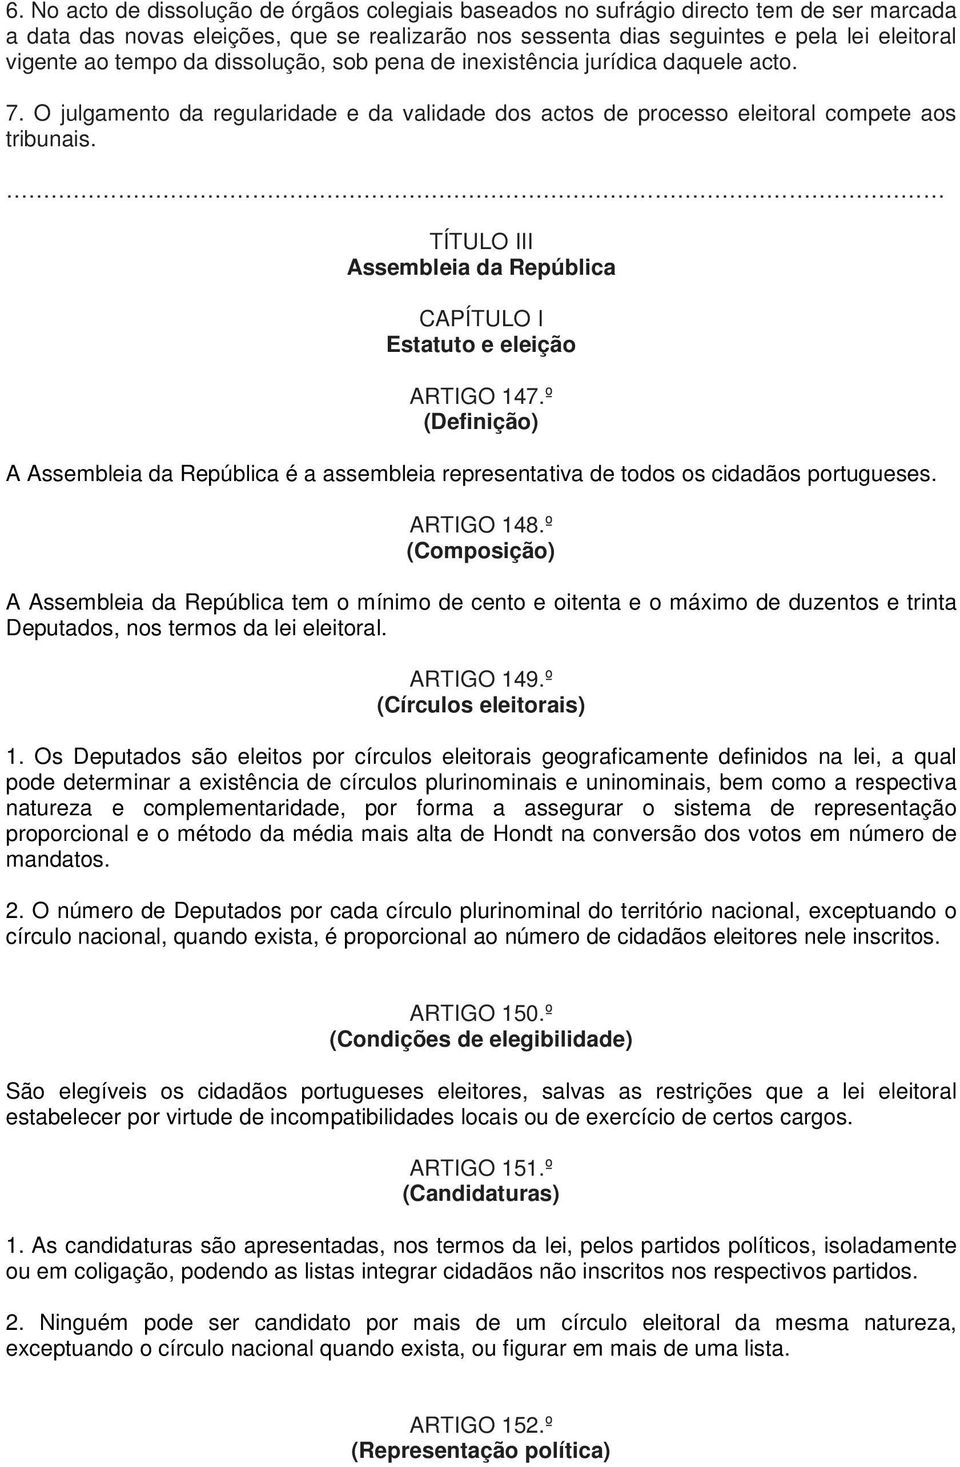 TÍTULO III Assembleia da República CAPÍTULO I Estatuto e eleição ARTIGO 147.º (Definição) A Assembleia da República é a assembleia representativa de todos os cidadãos portugueses. ARTIGO 148.